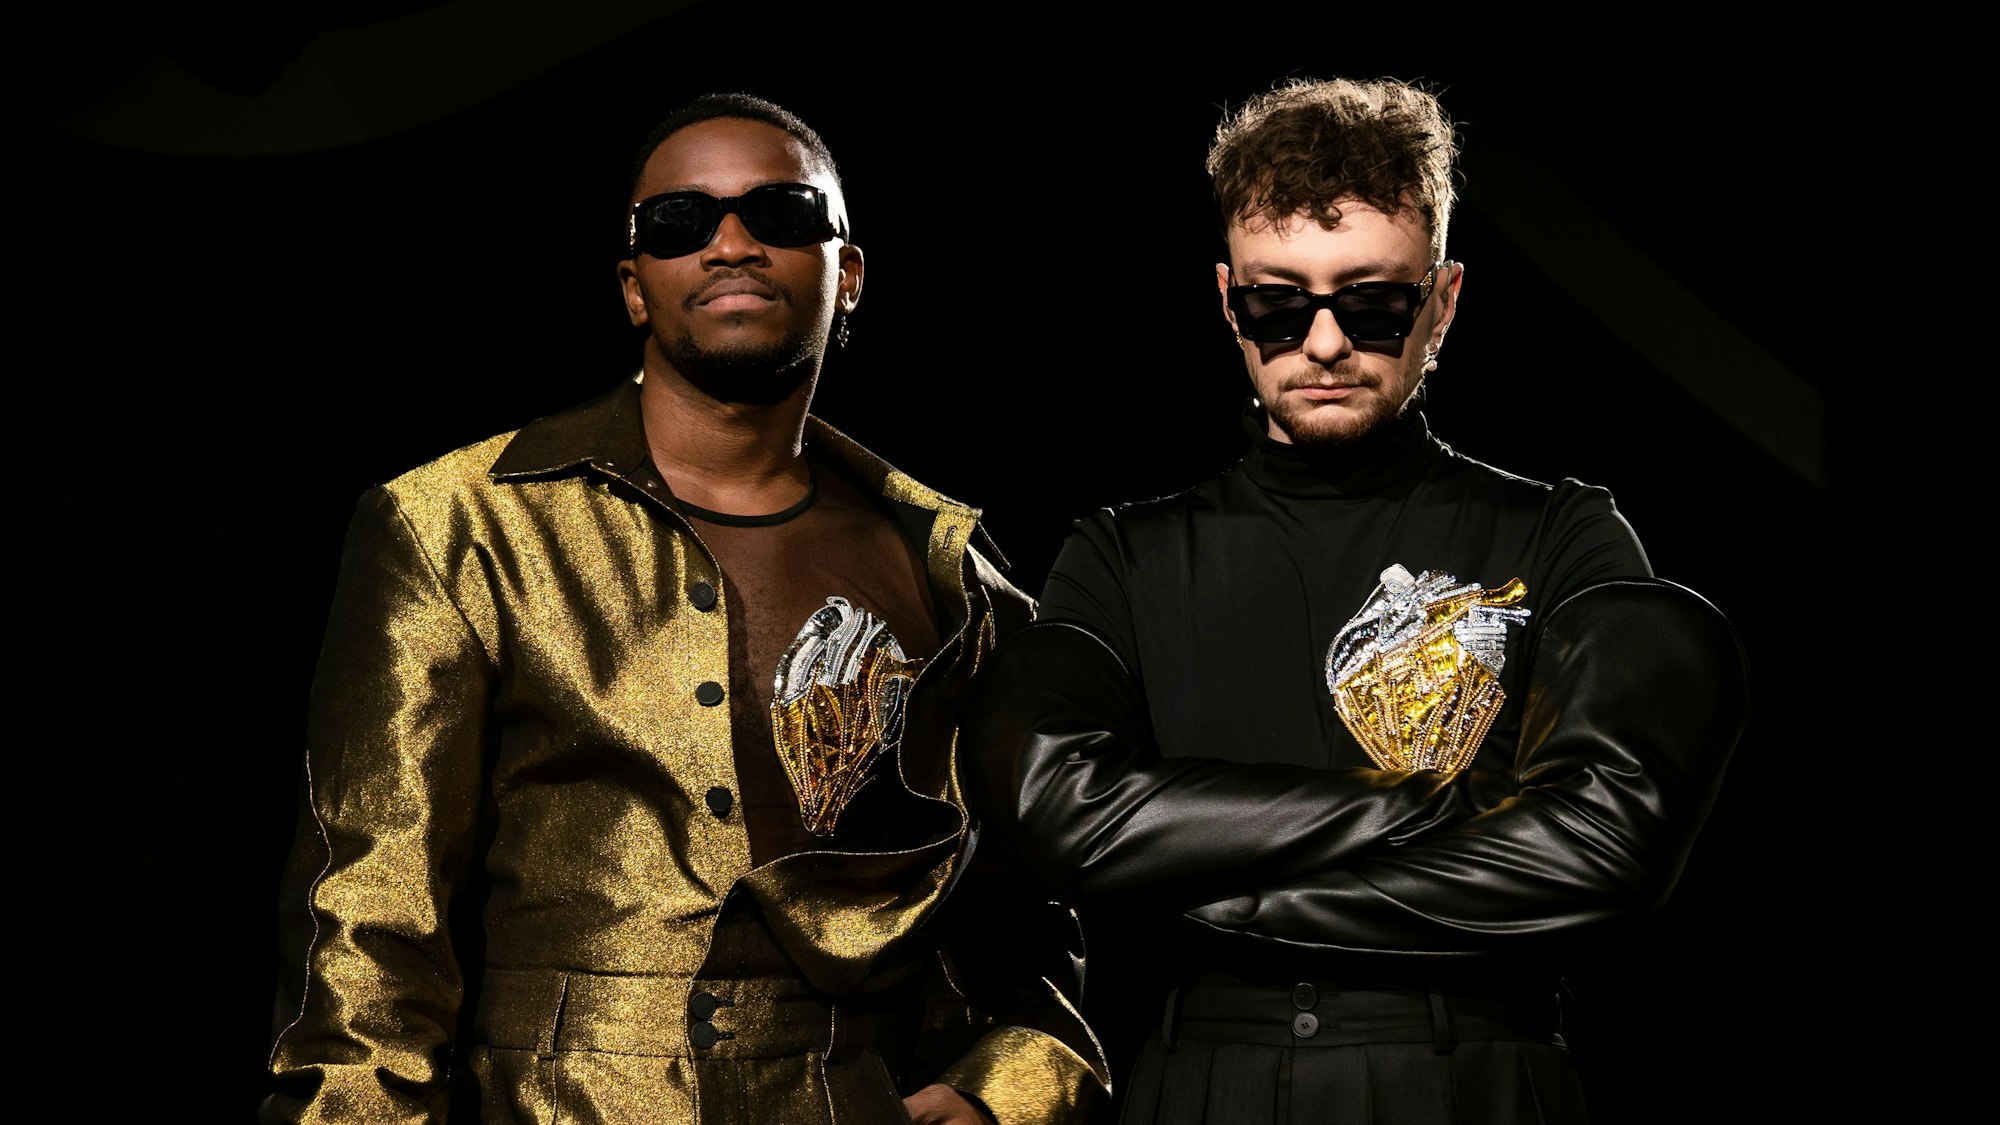 Jeffery Kenny (l) und Andrij Guzuljak von der Band TVORCHI in einer U-Bahn-Station. Sie tragen goldene bzw. schwarze Bühnenoutfits und dunkle Sonnenbrillen.